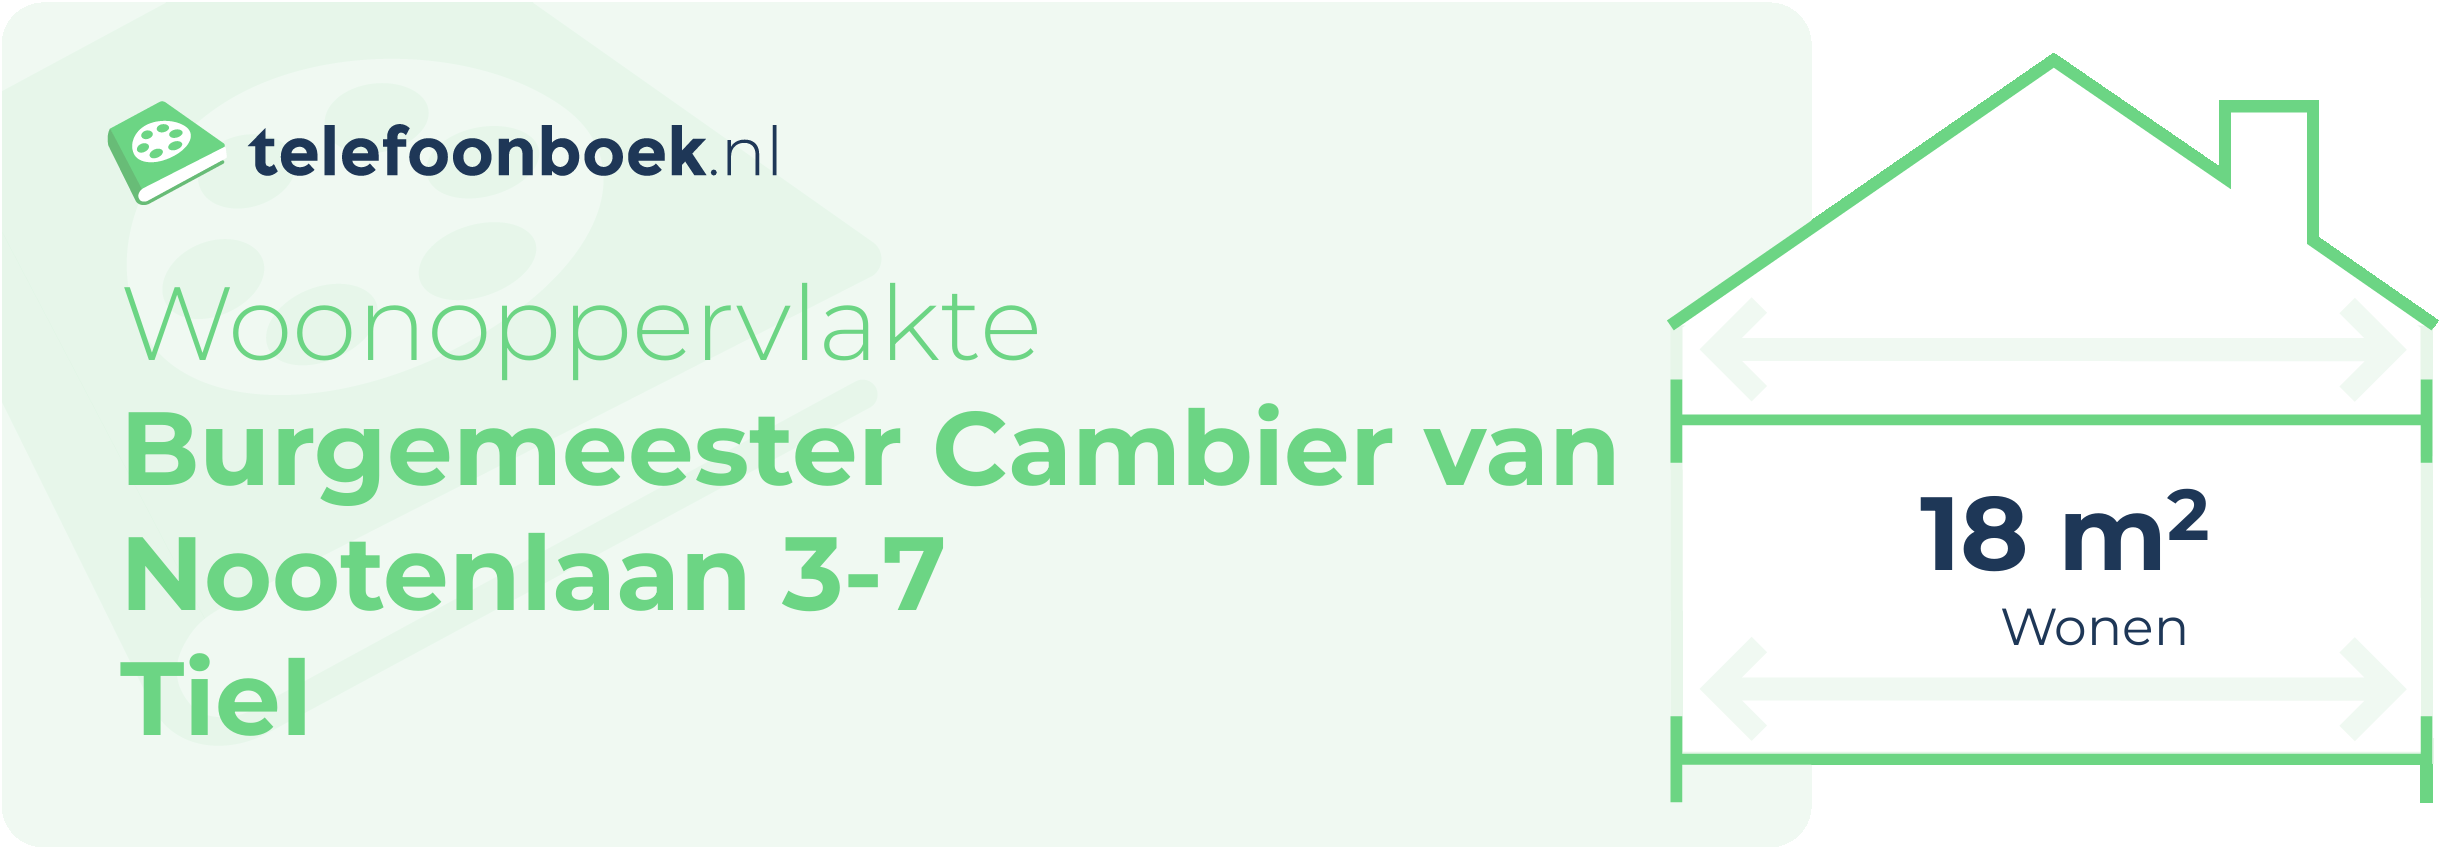 Woonoppervlakte Burgemeester Cambier Van Nootenlaan 3-7 Tiel